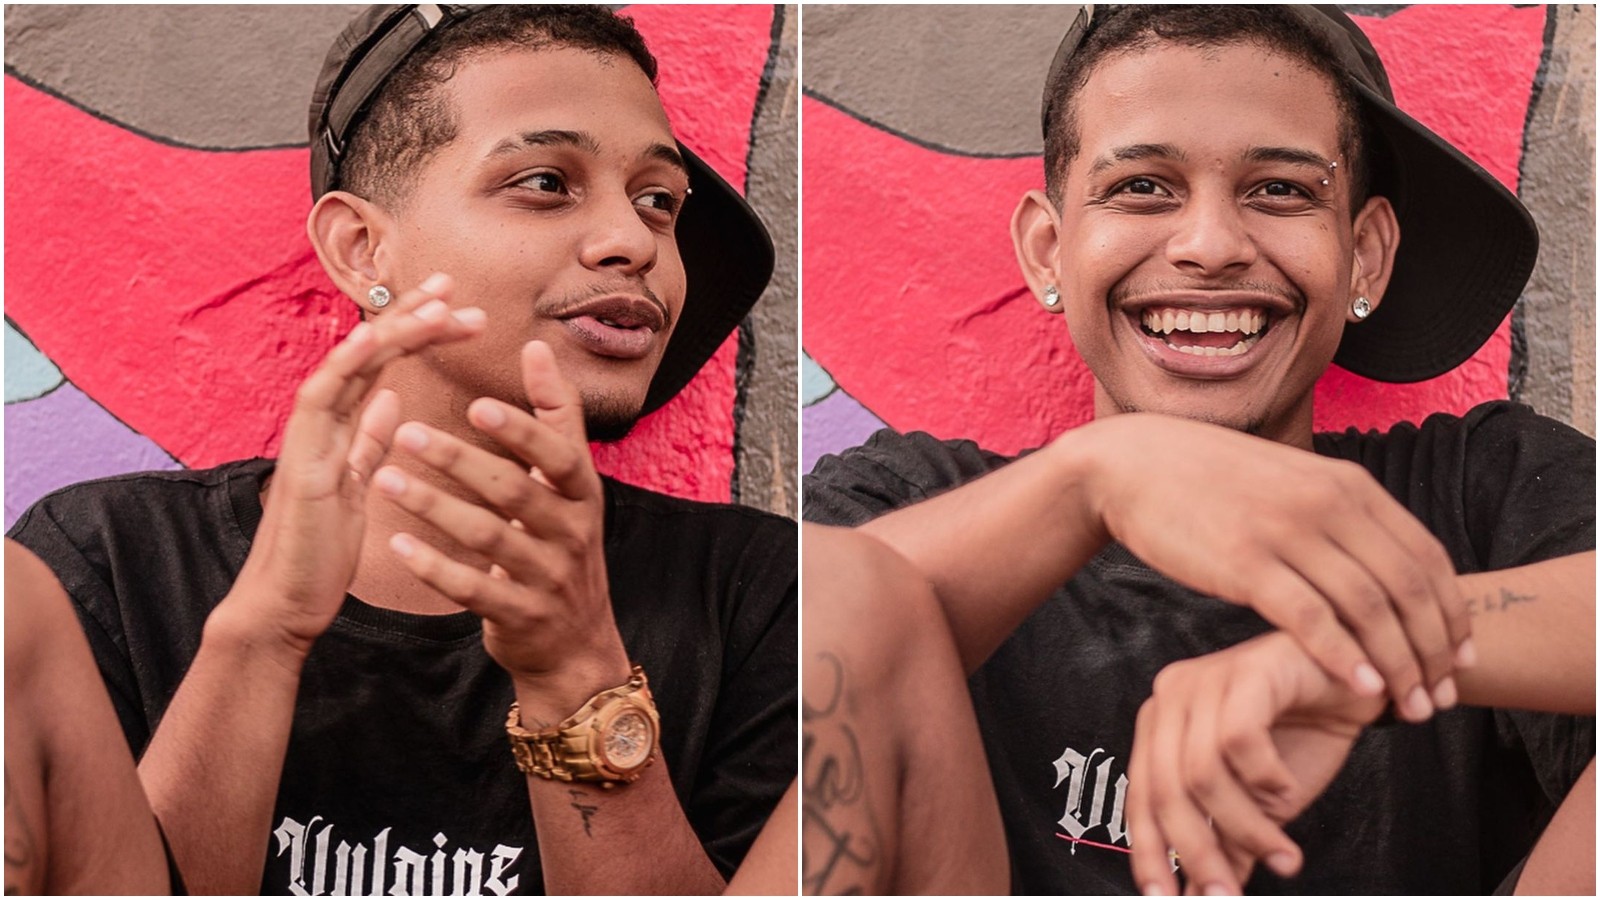 MC Vinner trabalhava como motorista de app quando foi assassinado a tiros em Fortaleza